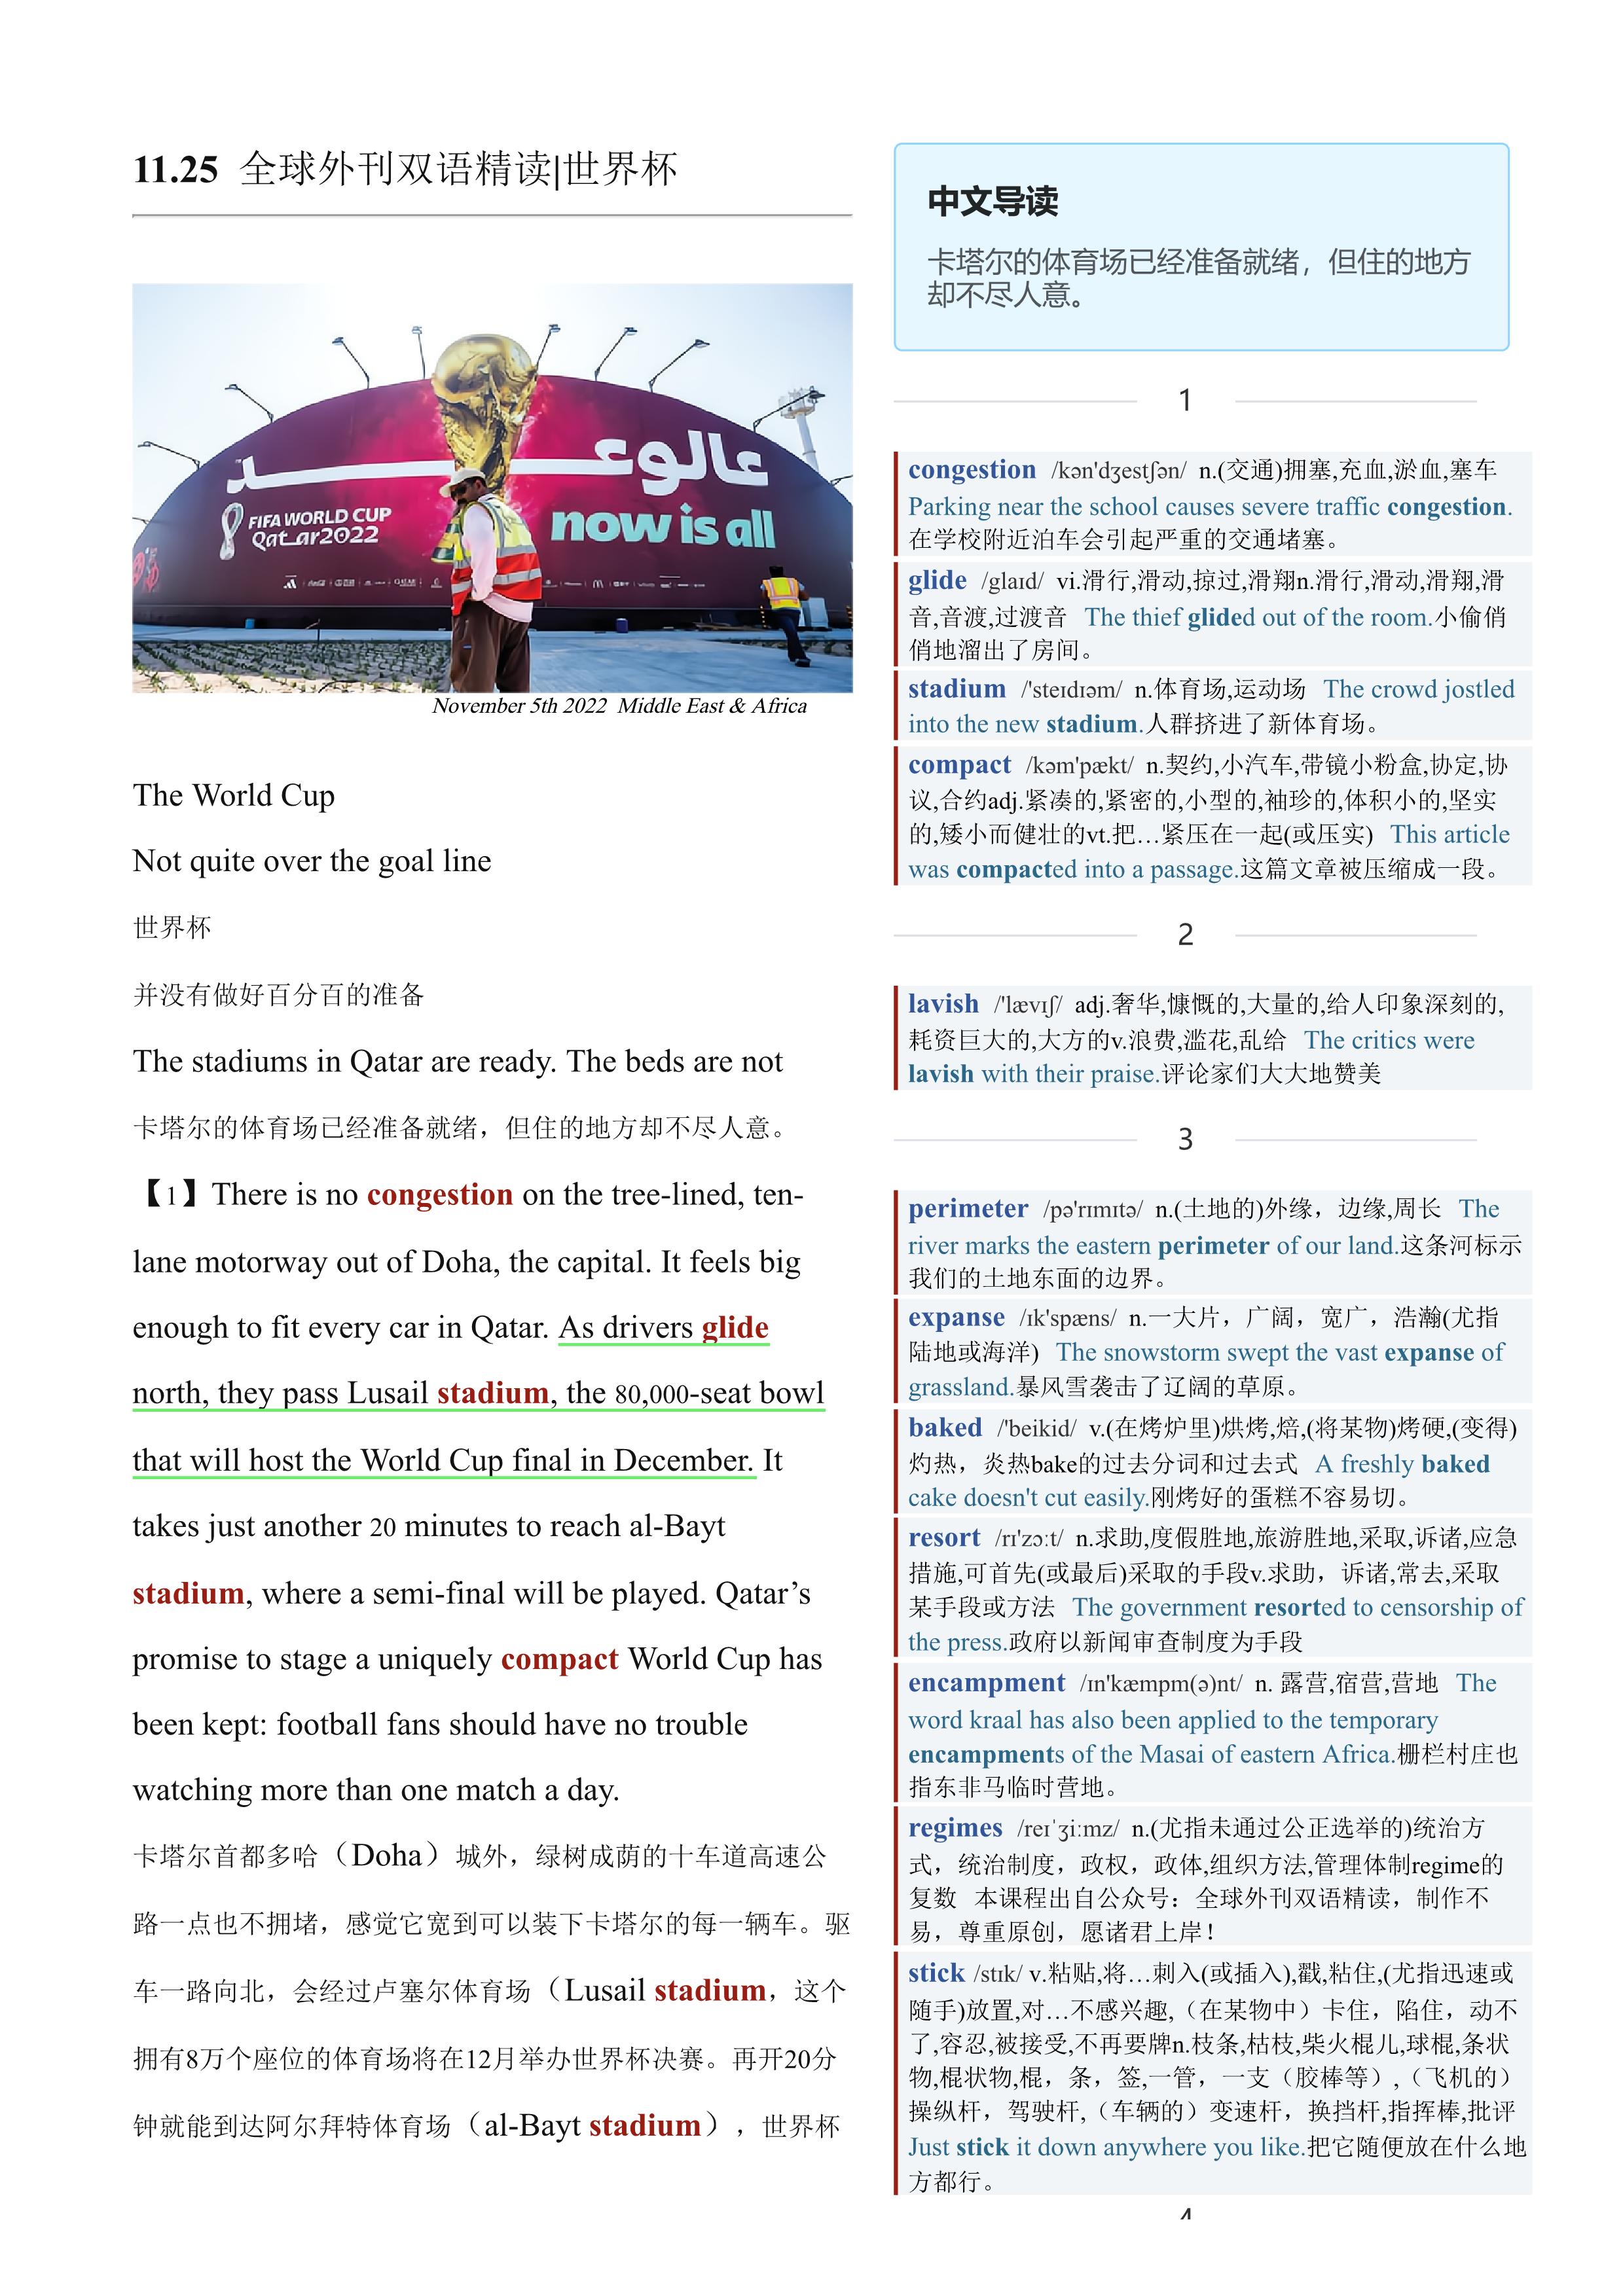 2022.11.25 经济学人双语精读丨世界杯 (.PDF/DOC/MP3)